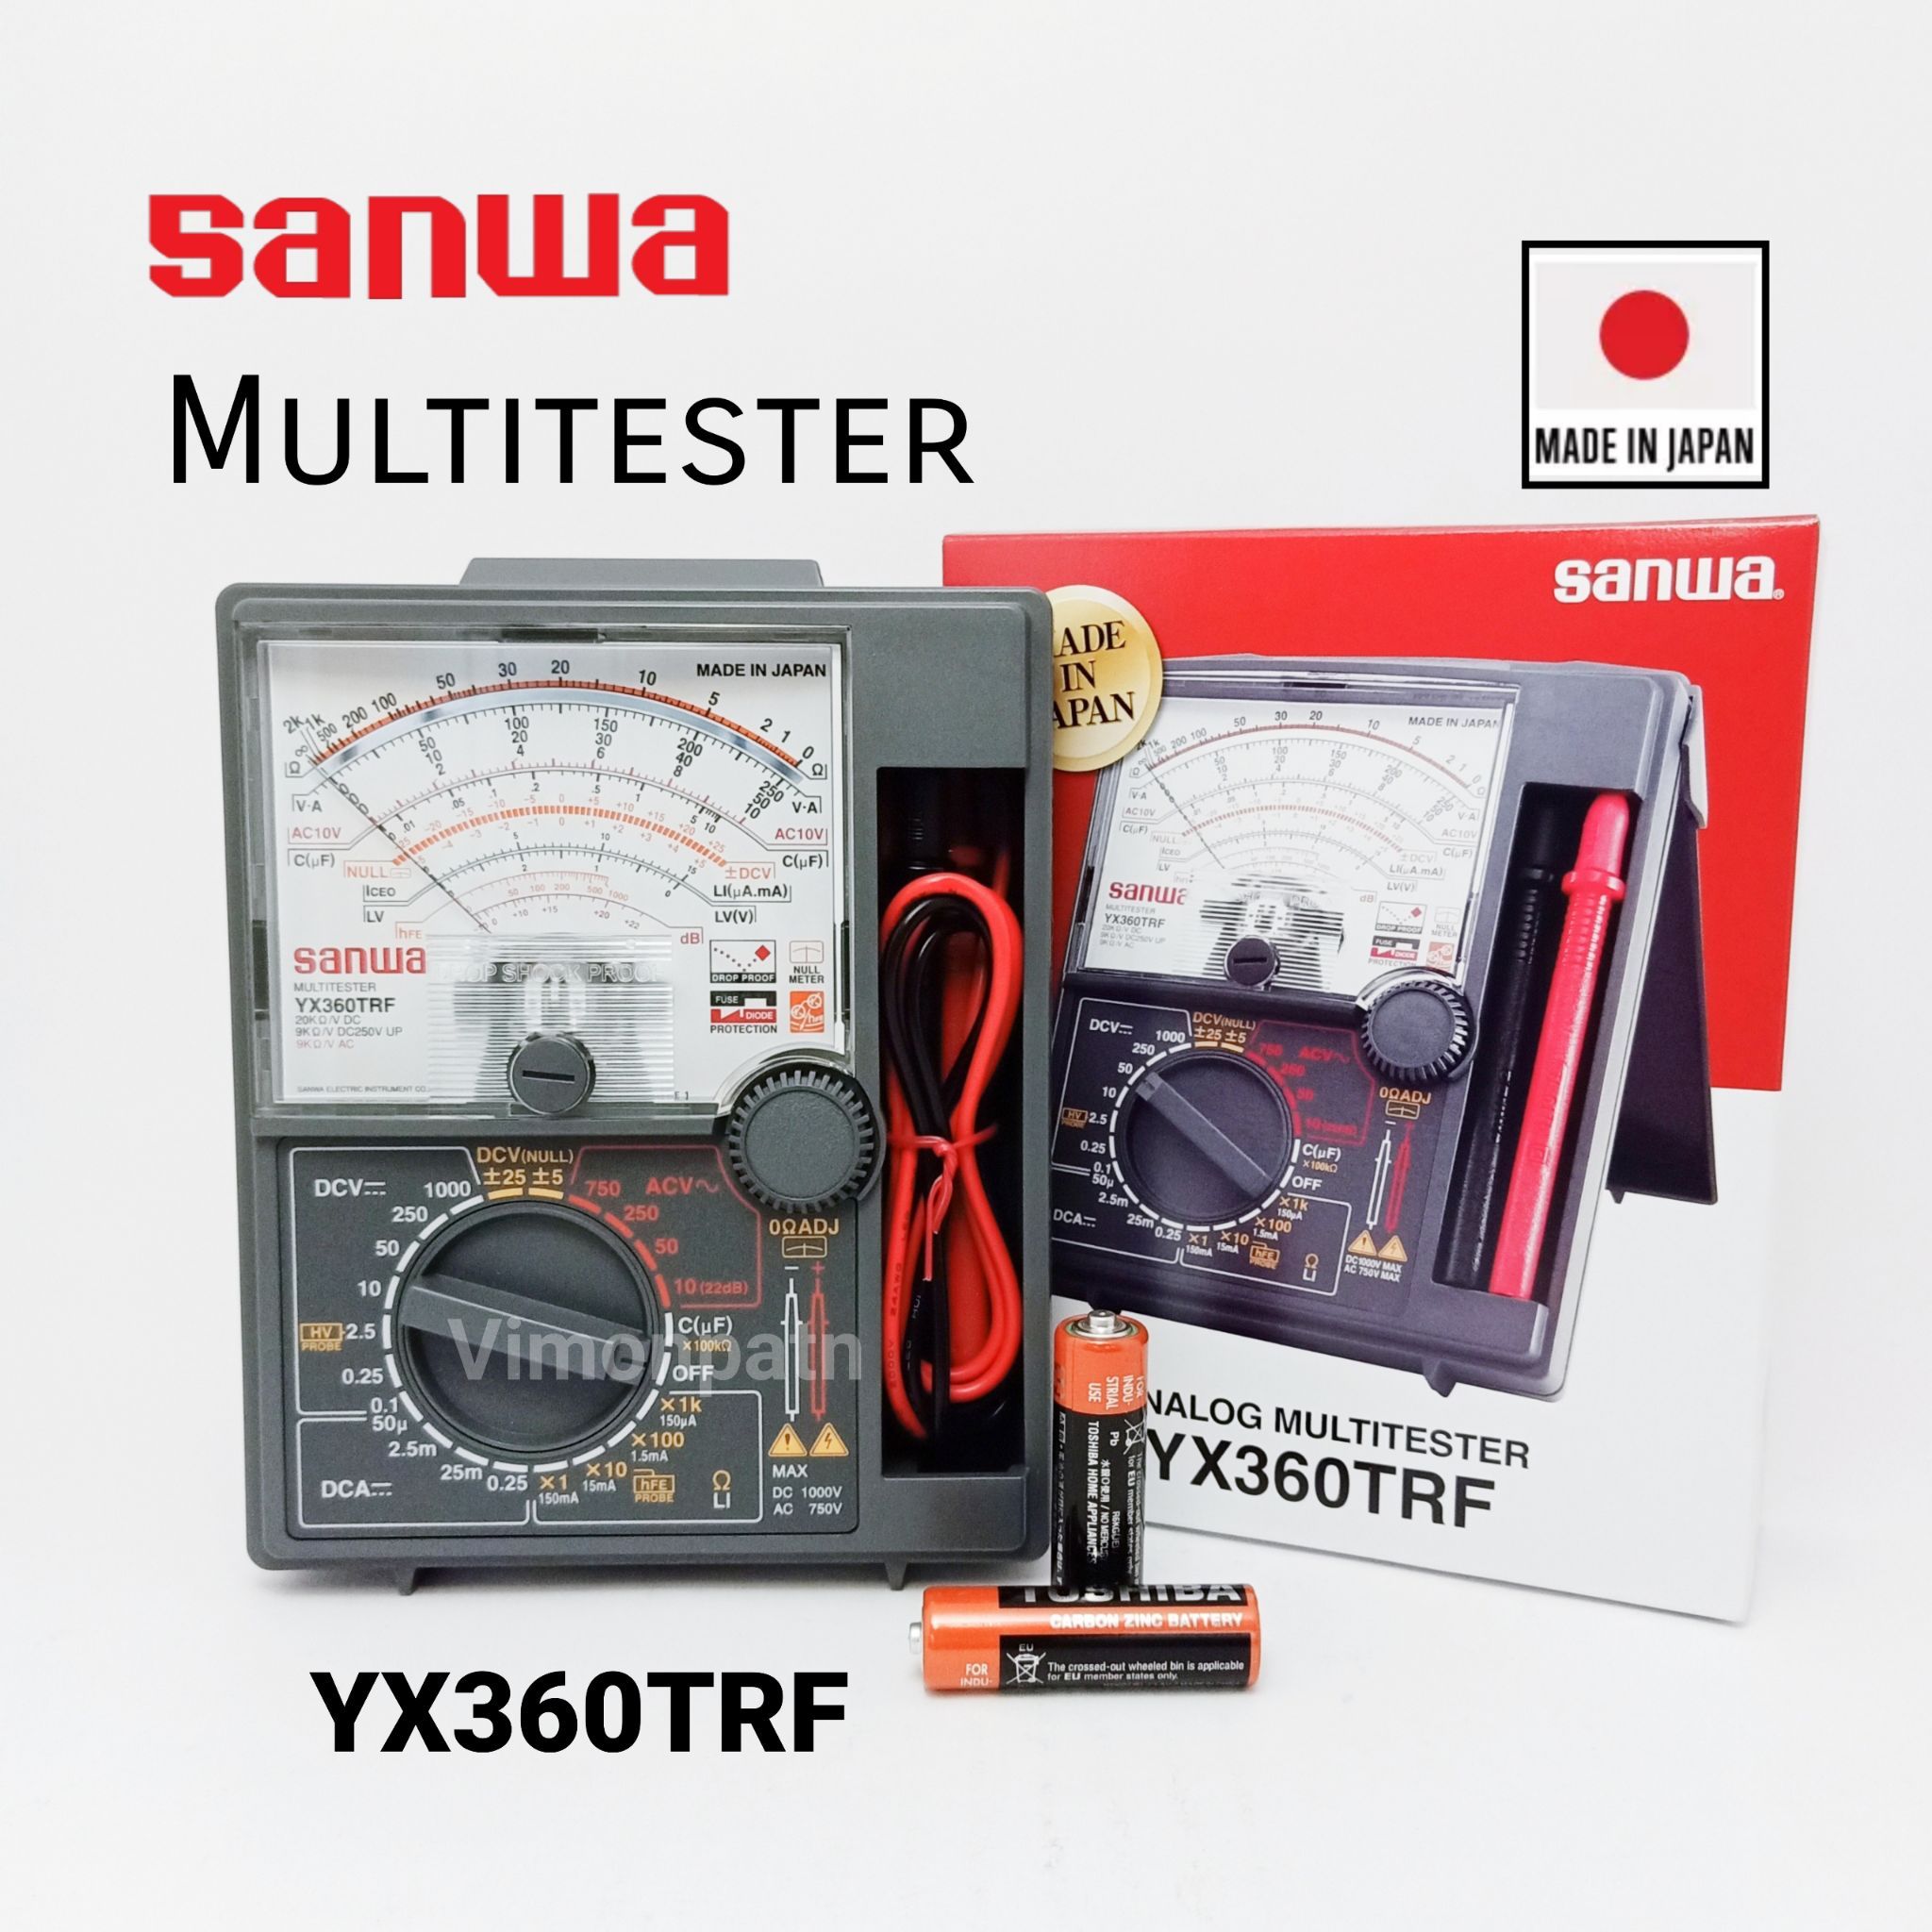 มัลติมิเตอร์ SANWA YX-360TRF มิเตอร์ 360TRF ของแท้ Made in Japan (สีเทา)